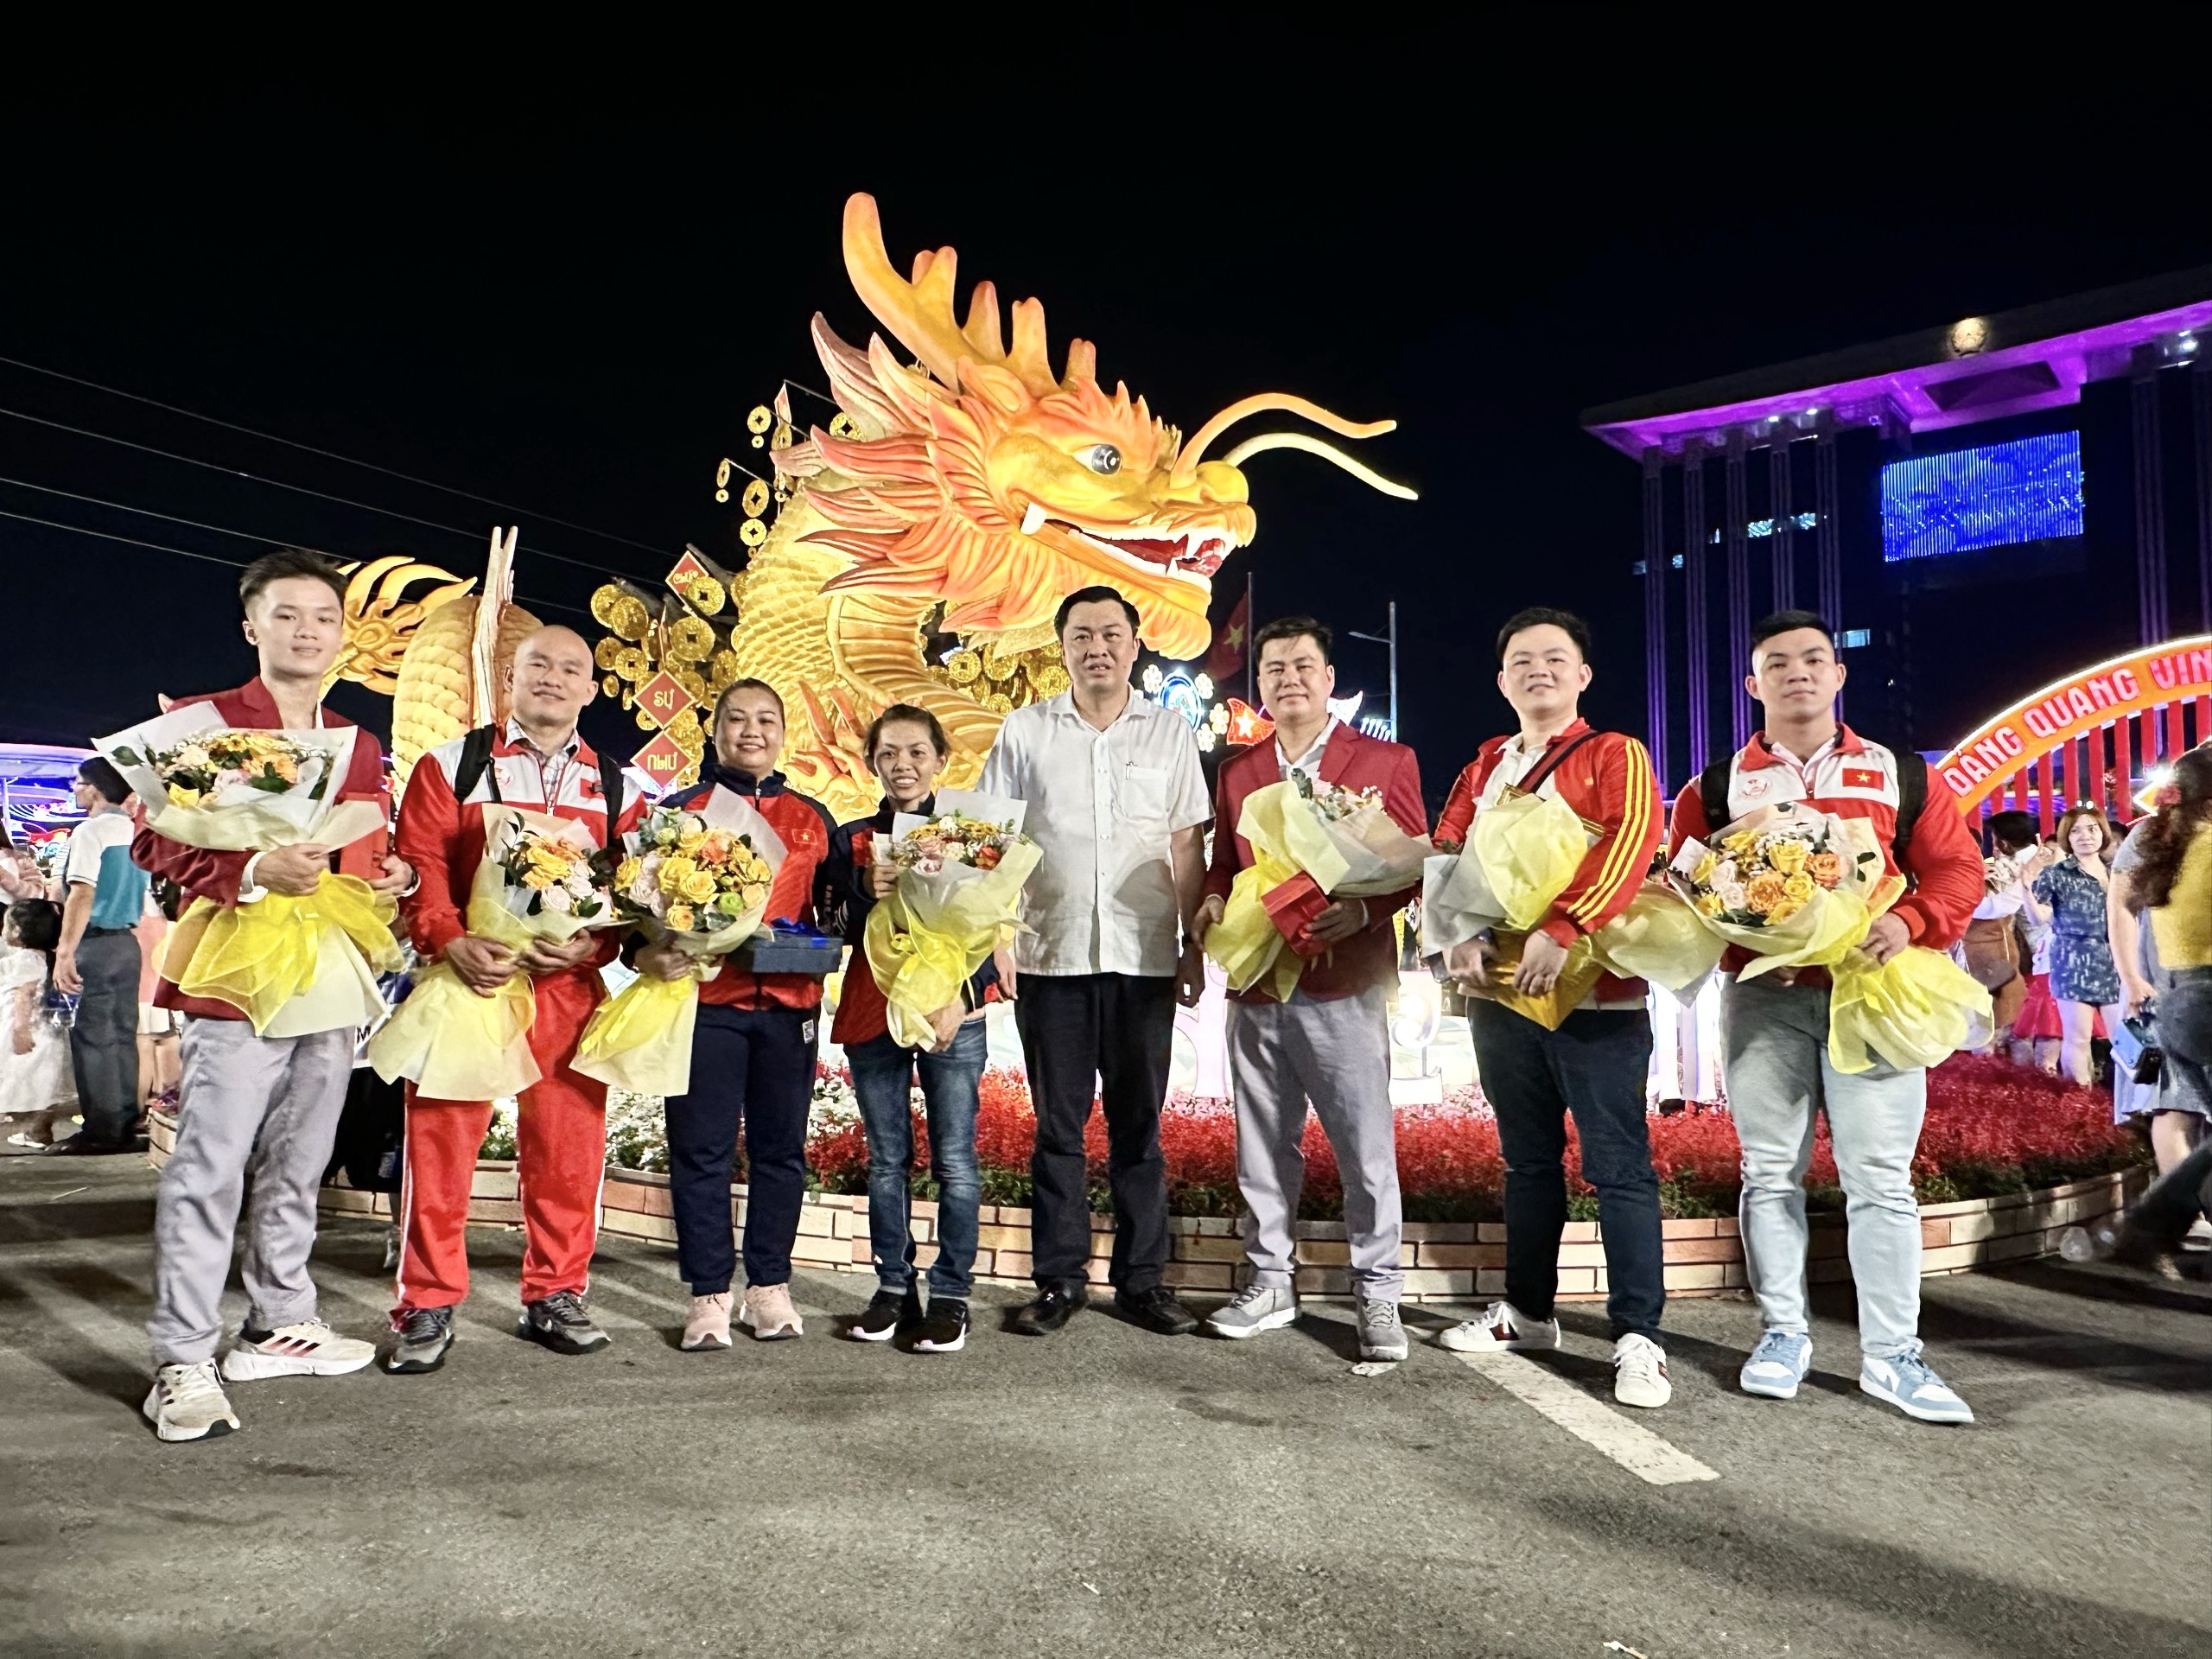 Ông Cao Văn Chóng – Phó Giám đốc Sở Văn hoá Thể thao và Du lịch tỉnh Bình Dương chụp hình lưu niệm cùng các vận động viên được tuyên dương công dân tiêu biểu trước linh vật rồng vàng có thể cử động tại khu vực Hội hoa Xuân Bình Dương, nơi diễn ra lễ tuyên dương